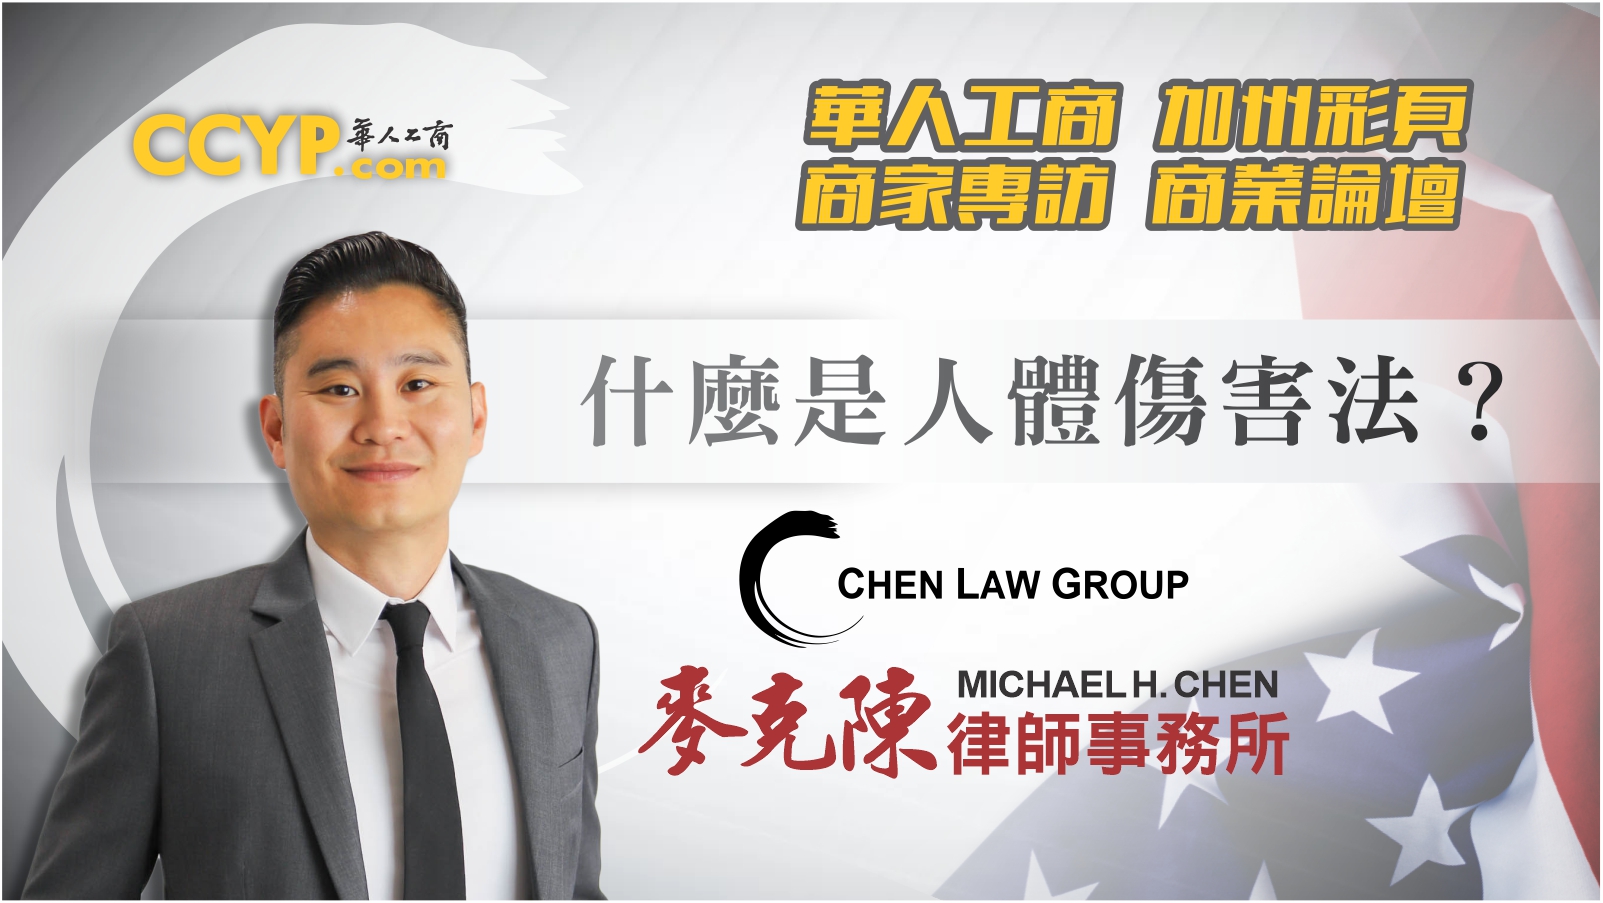 華人工商加州彩頁商家專訪 | Chen Law Group 麥克陳律師事務所